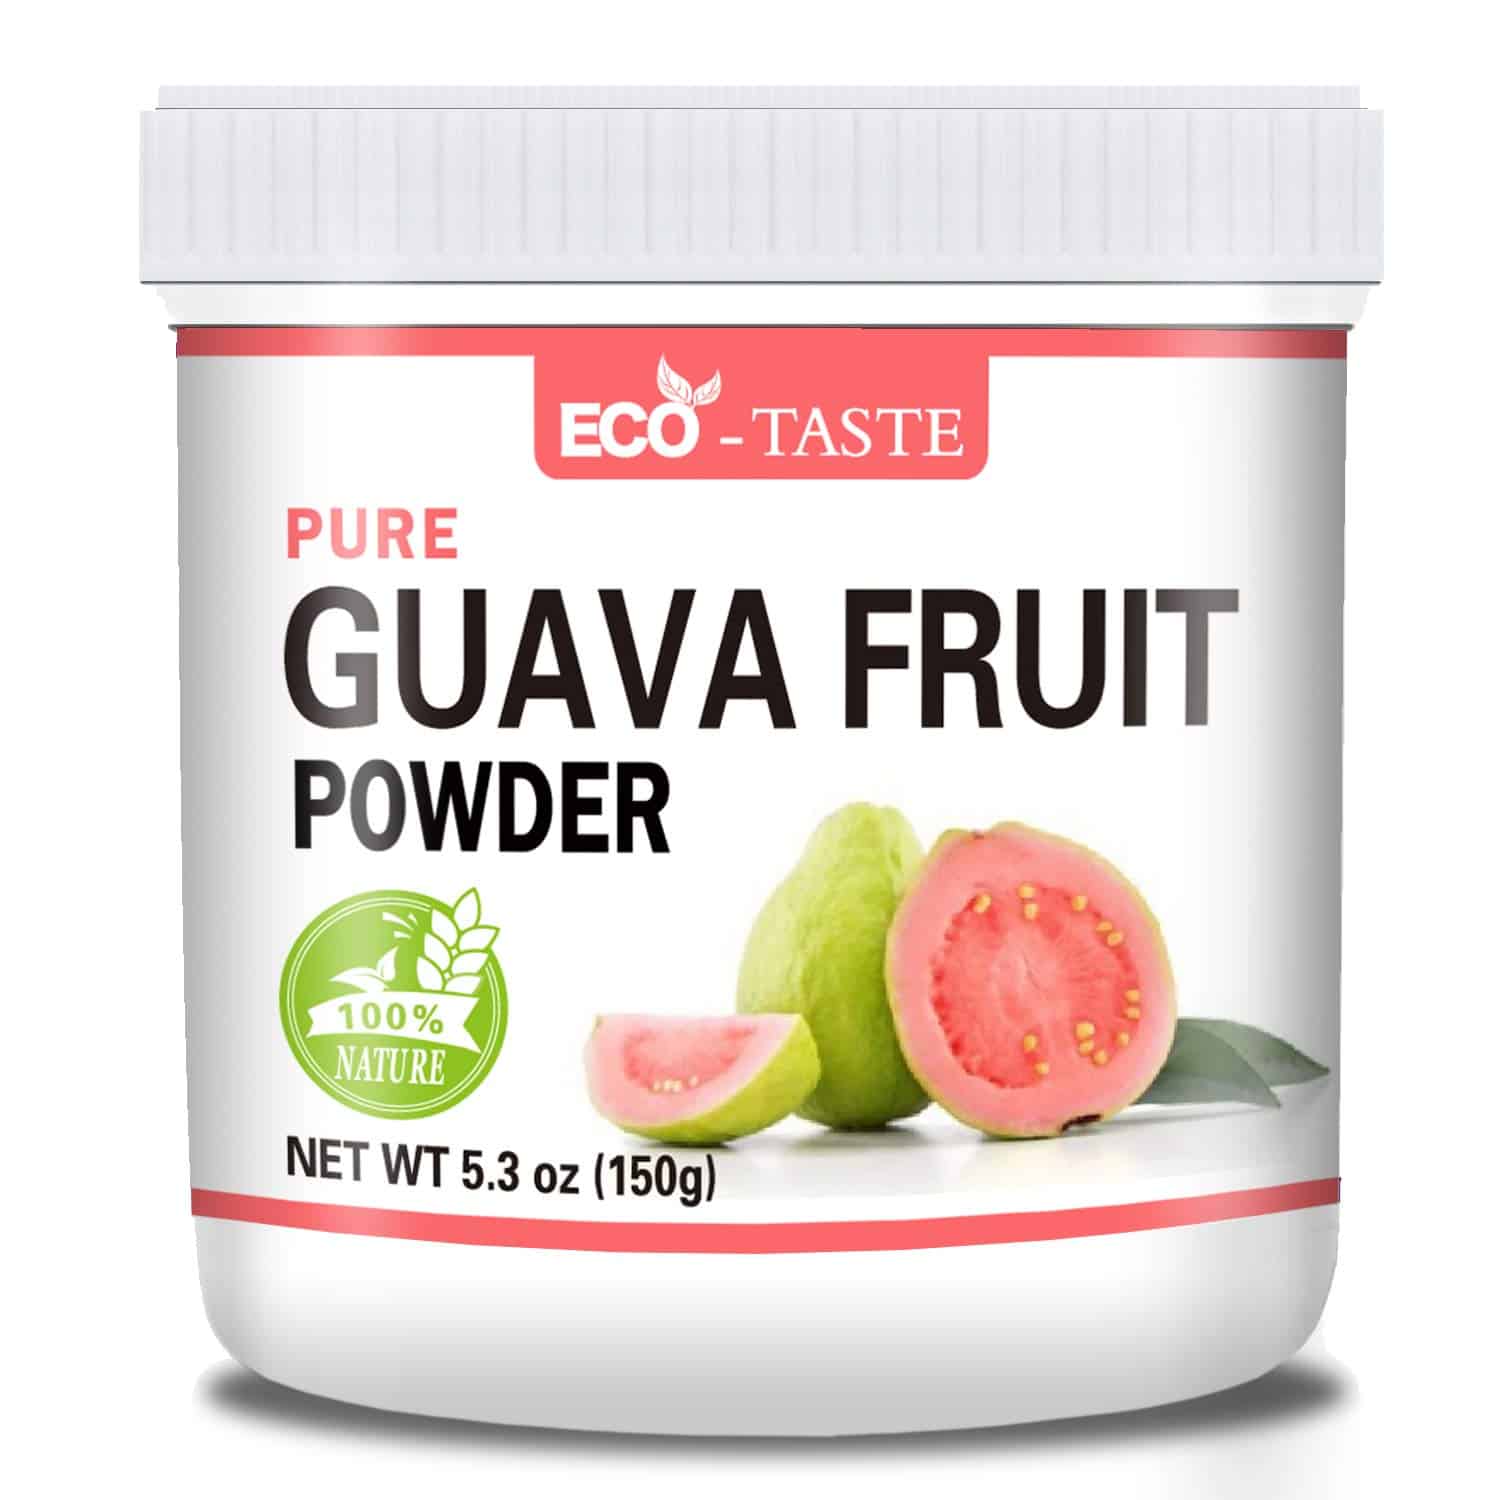 Guava-Fruit-Powder-Fillers-E bonolo